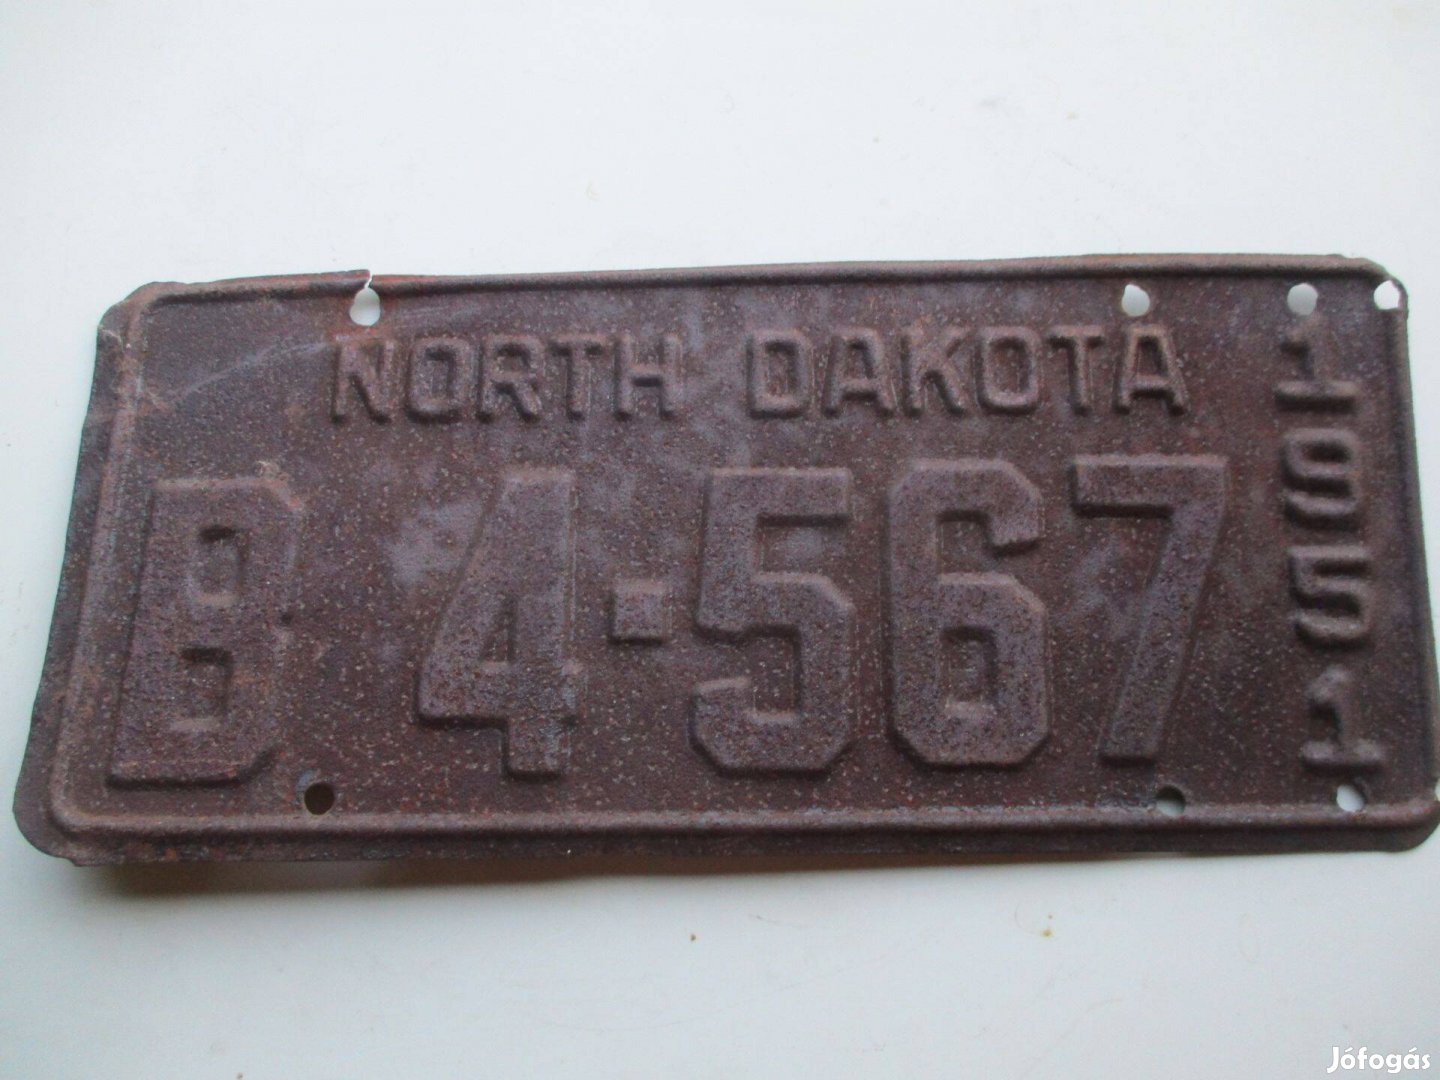 Régi USA rendszám 1951-es North Dakota államból eladó!